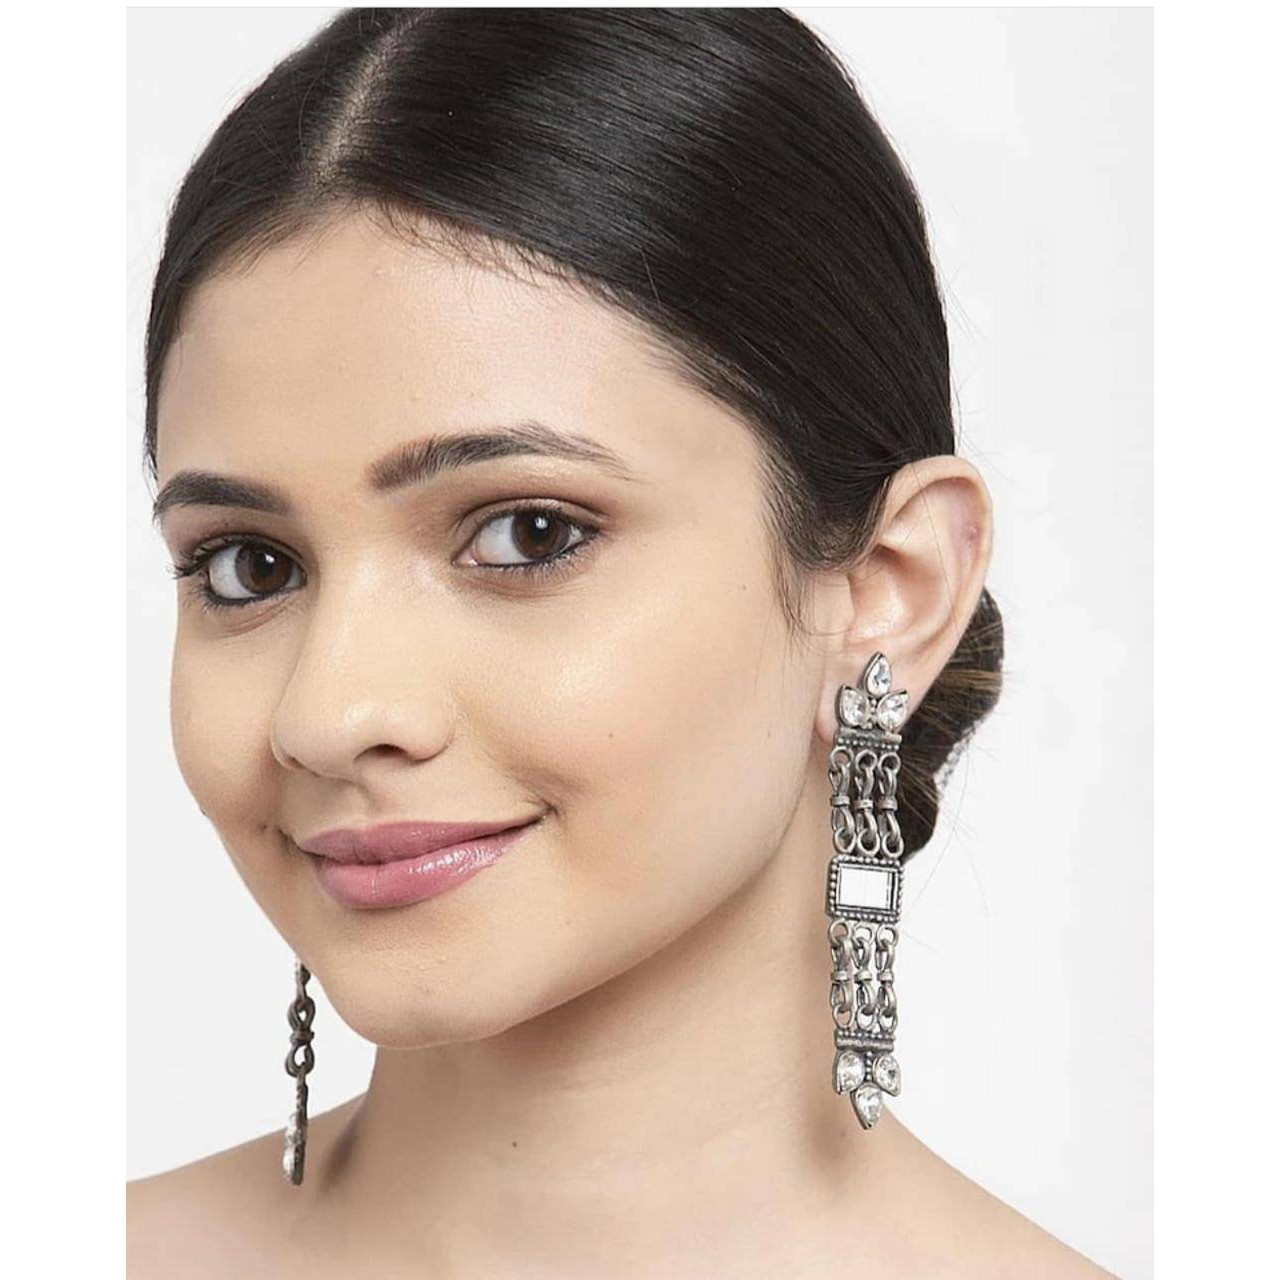 Mirror earrings, Indian long chandelier earrings, Afghani earrings, oxidised earrings, silver look earrings, handmade, gifts for her, annive